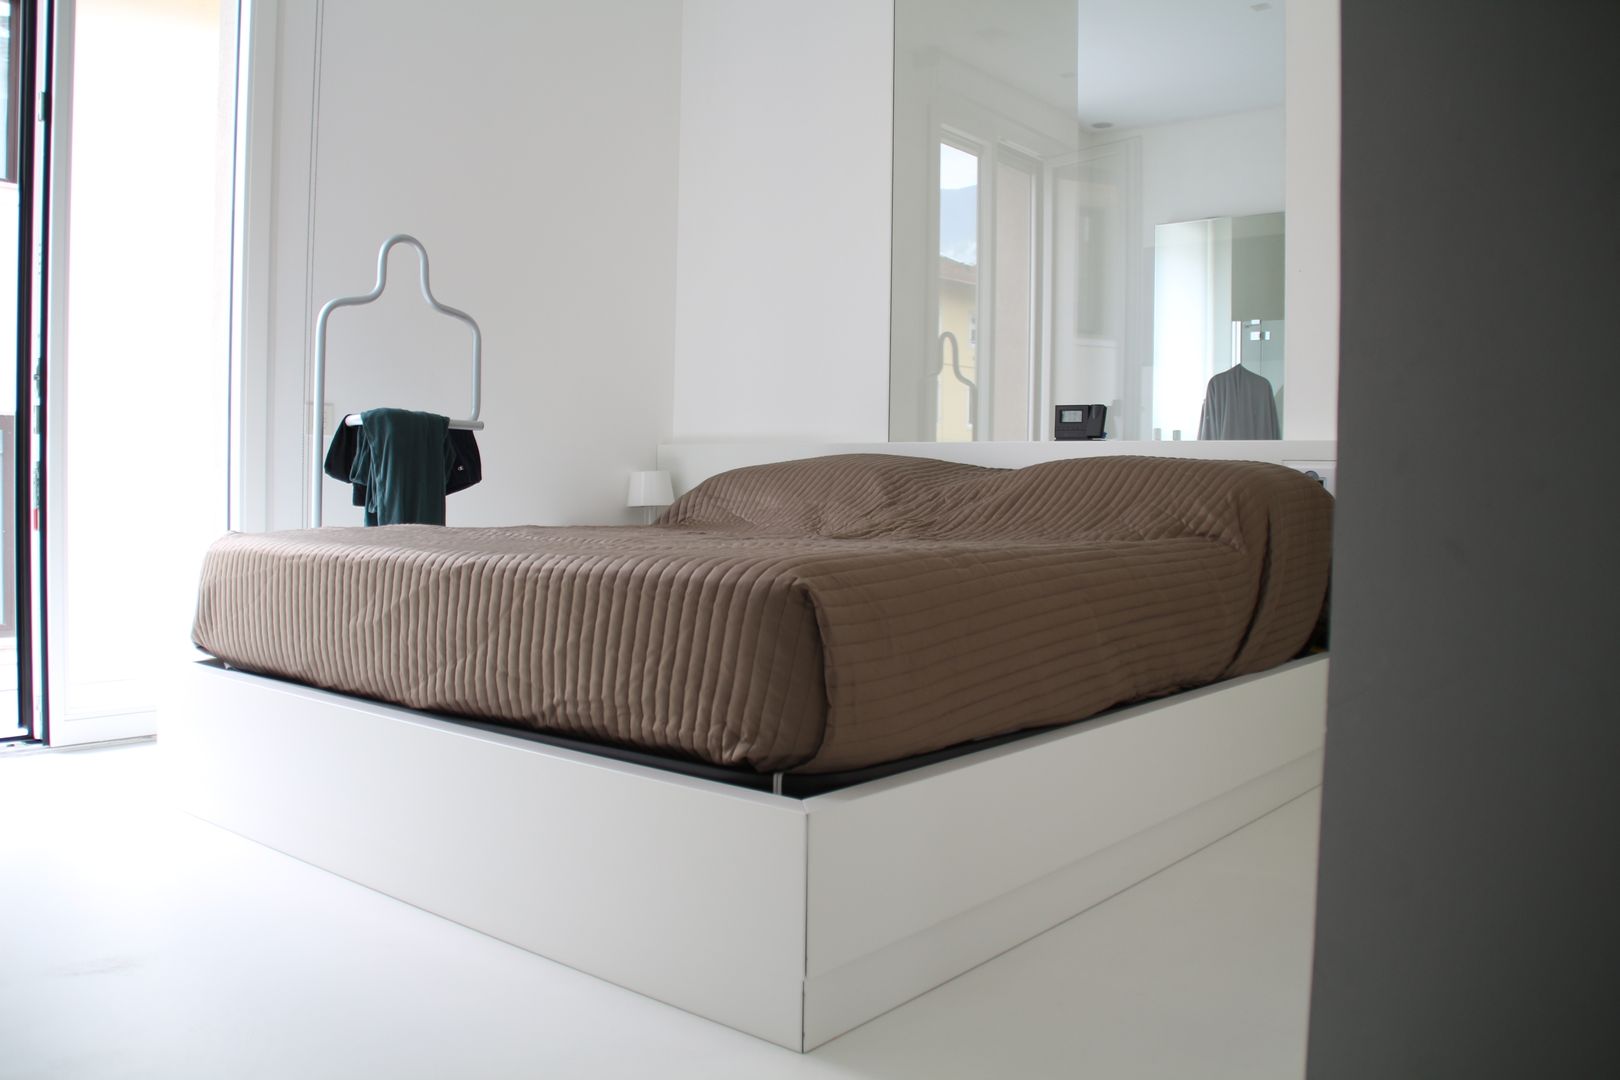 TOTAL WHITE, Serenella Pari design Serenella Pari design Minimalist bedroom